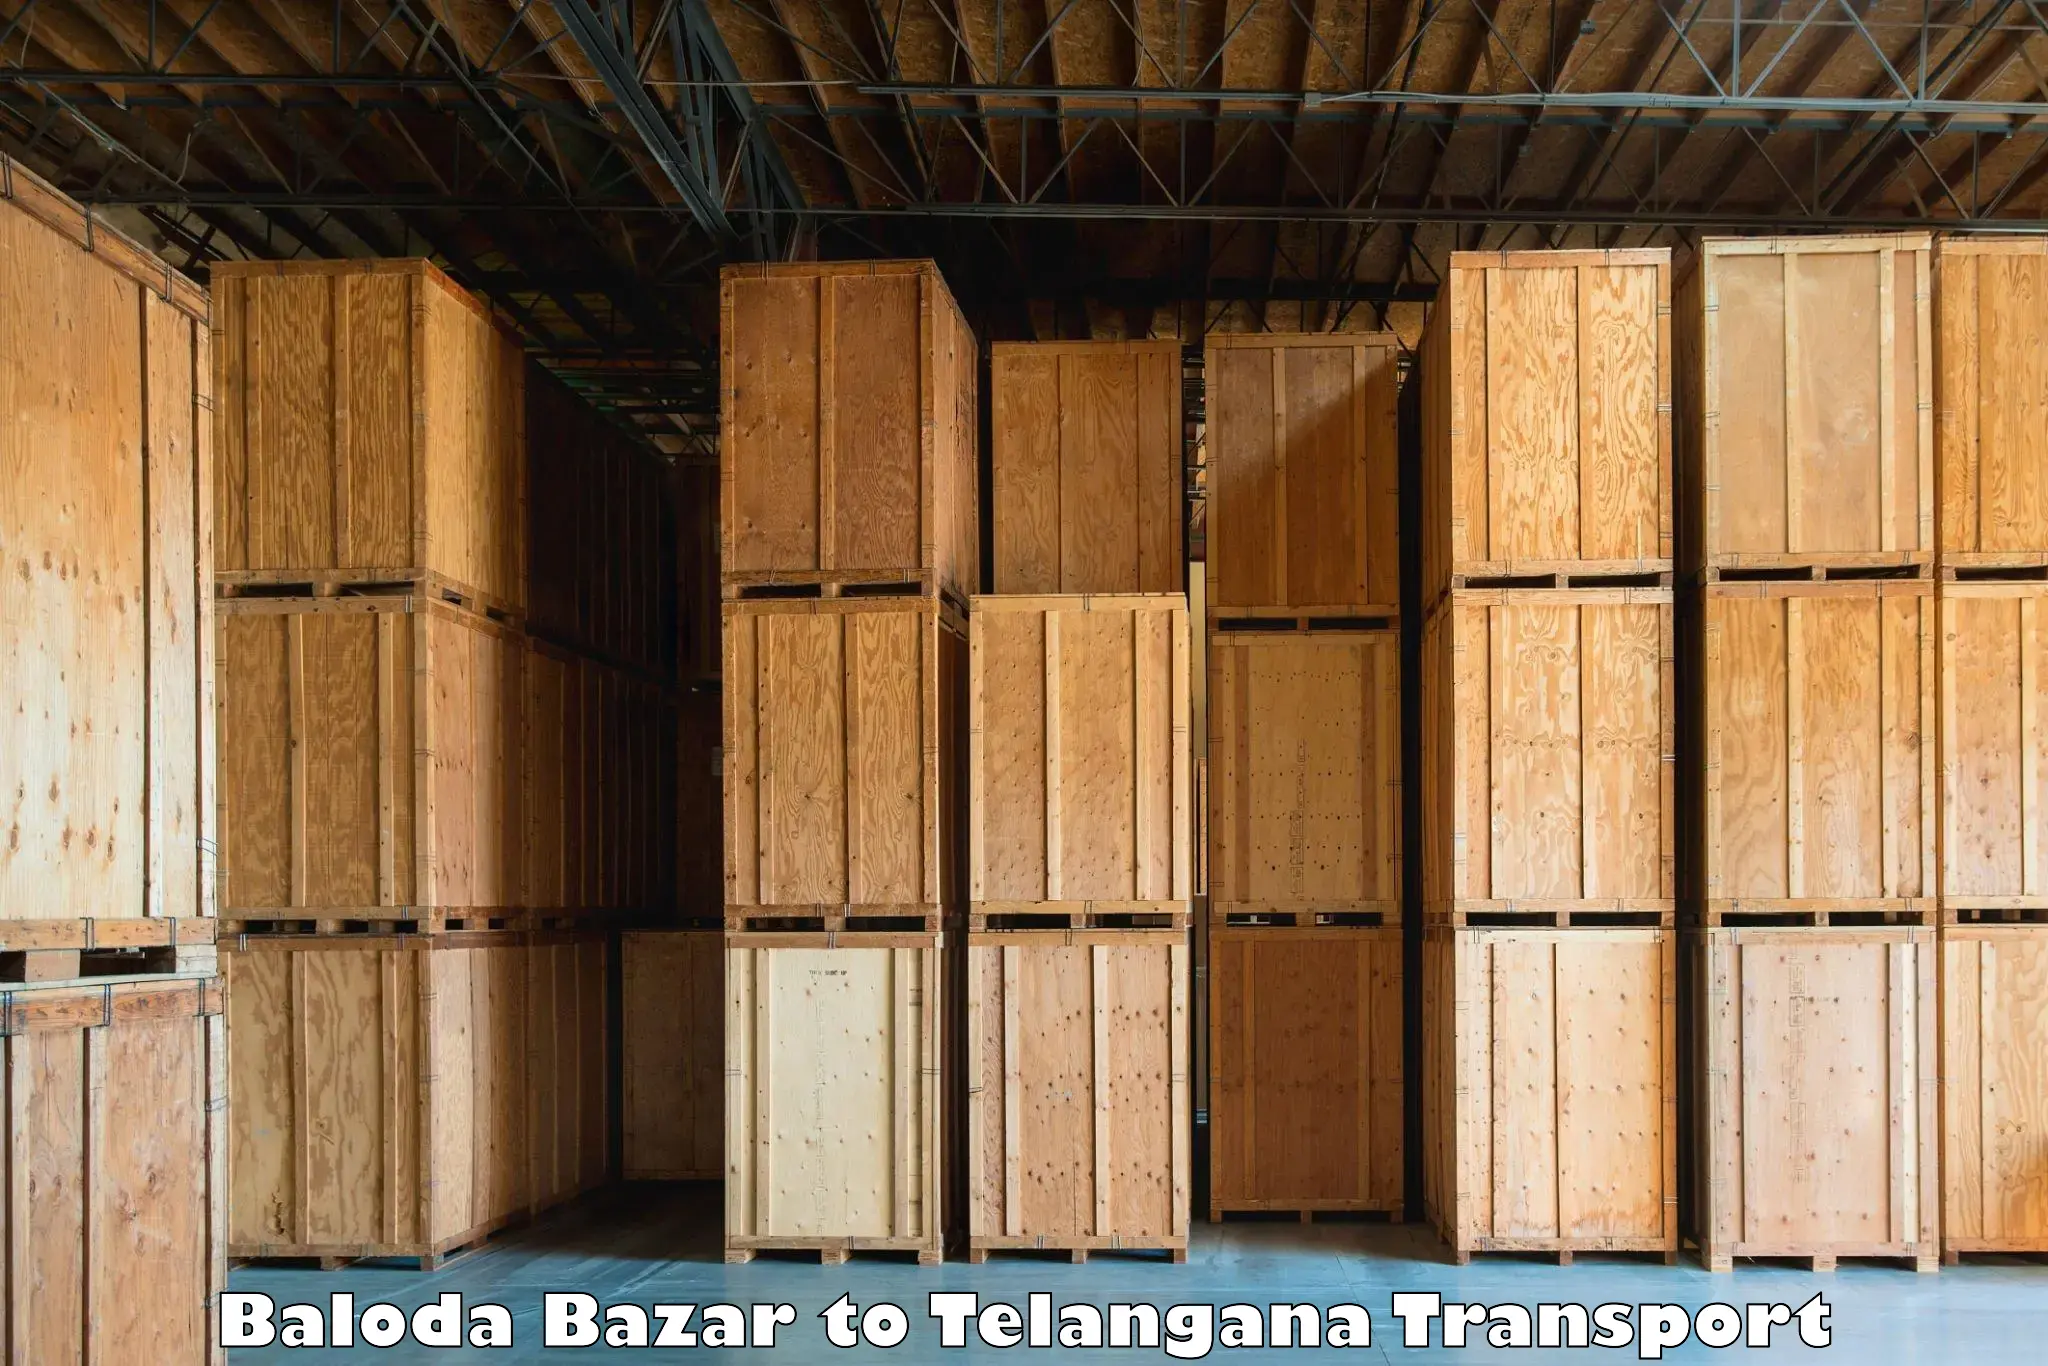 Truck transport companies in India Baloda Bazar to Dubbak